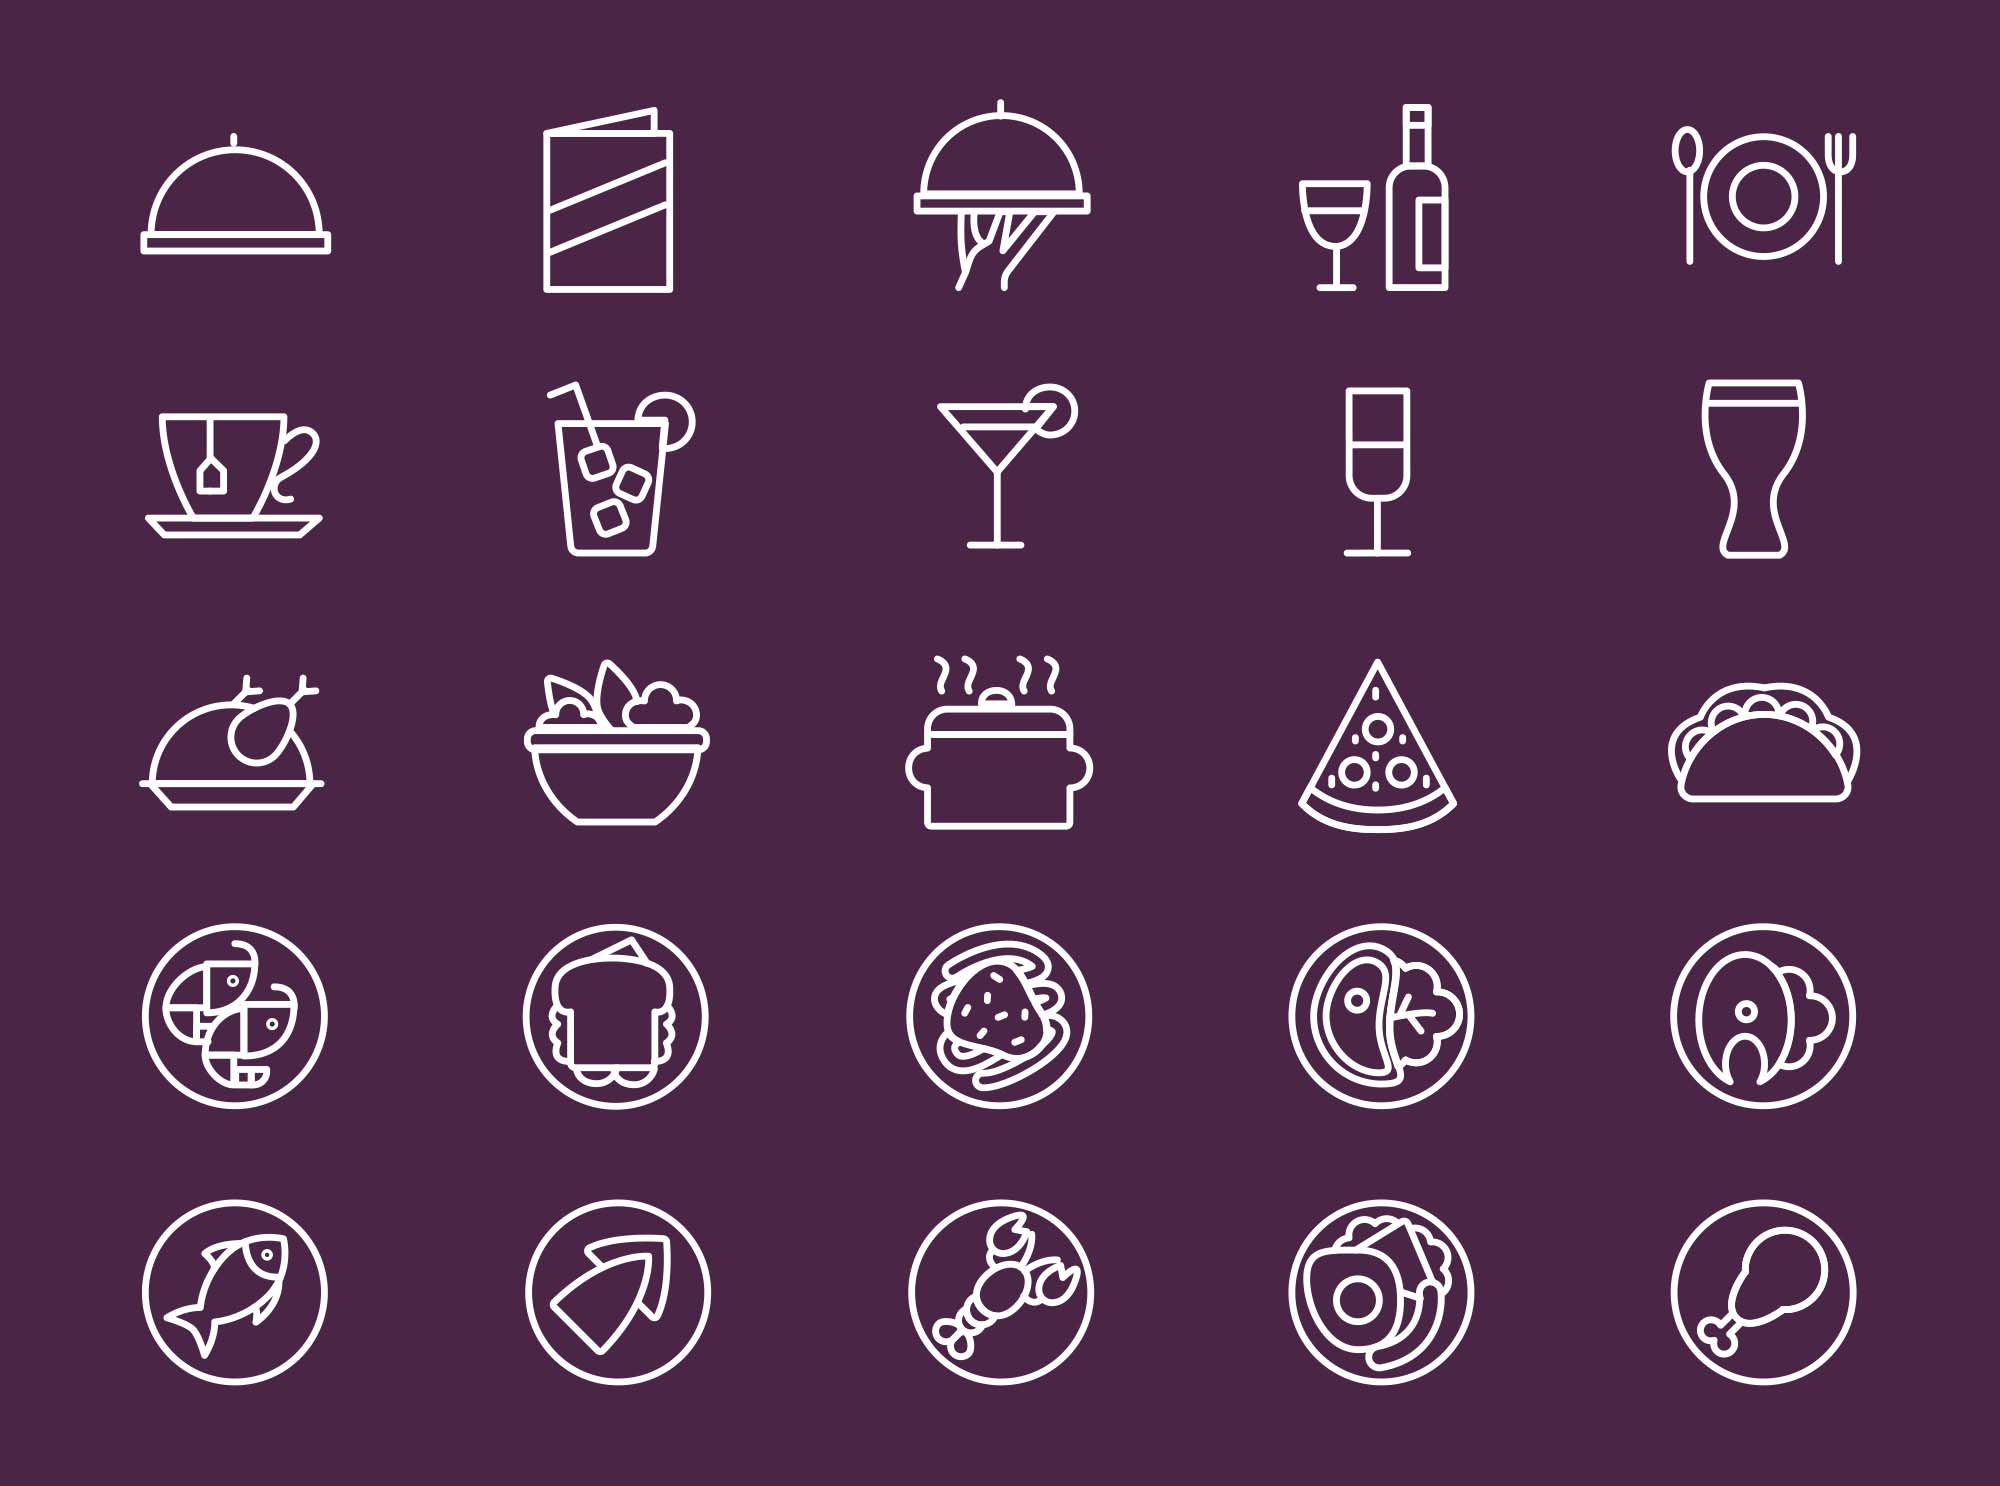 25枚餐厅菜单设计 可用的矢量线性第一素材精选图标 25 Restaurant Menu Icons插图